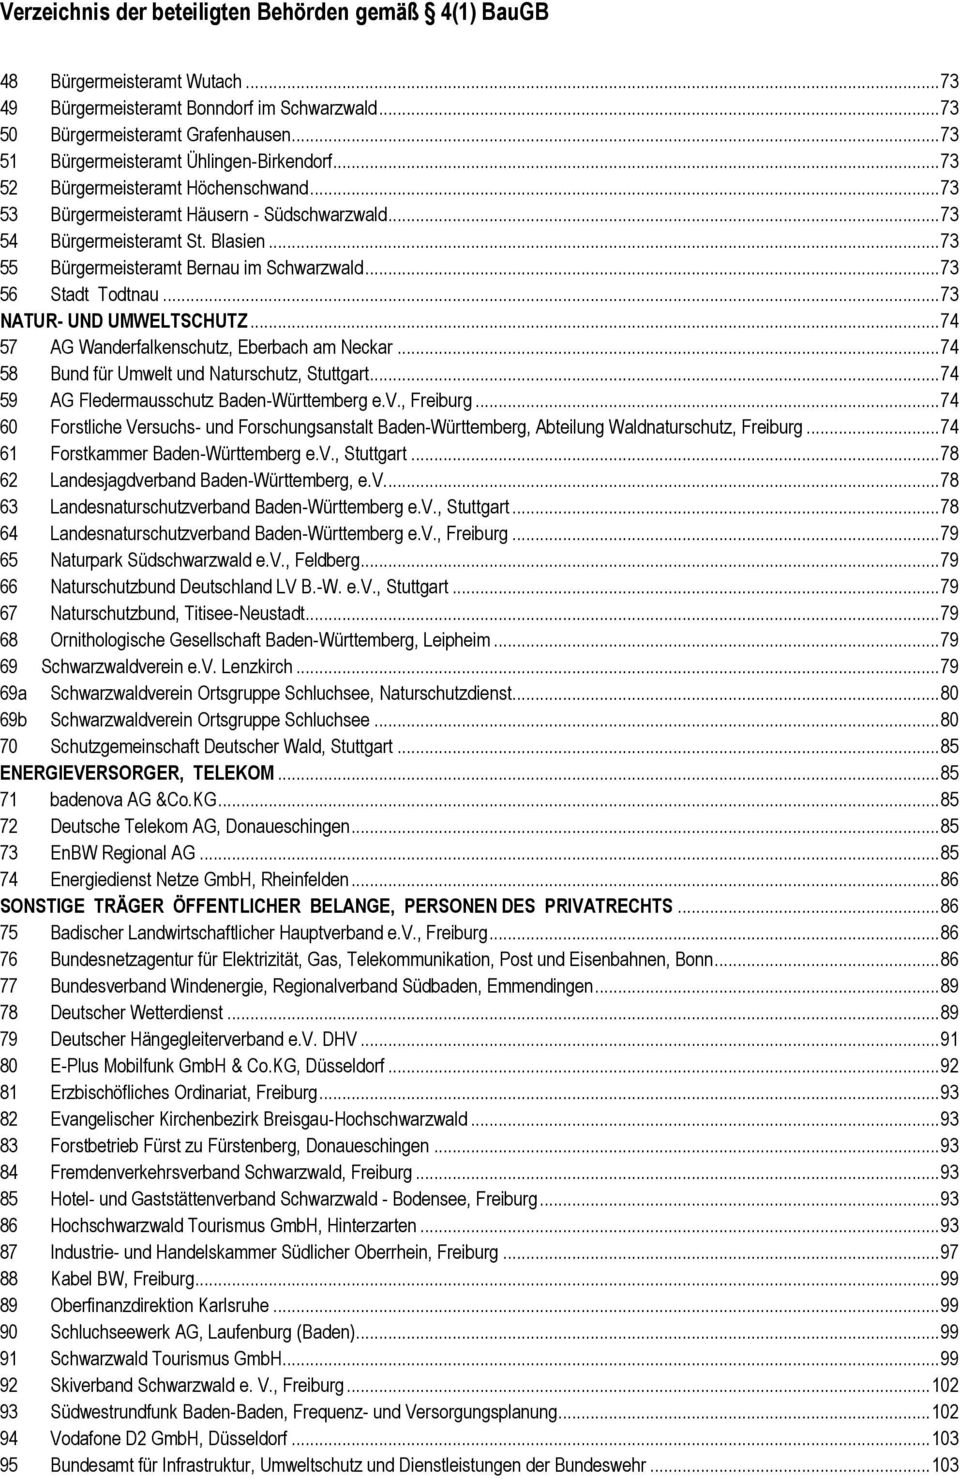 .. 73 55 Bürgermeisteramt Bernau im Schwarzwald... 73 56 Stadt Todtnau... 73 NATUR- UND UMWELTSCHUTZ... 74 57 AG Wanderfalkenschutz, Eberbach am Neckar.